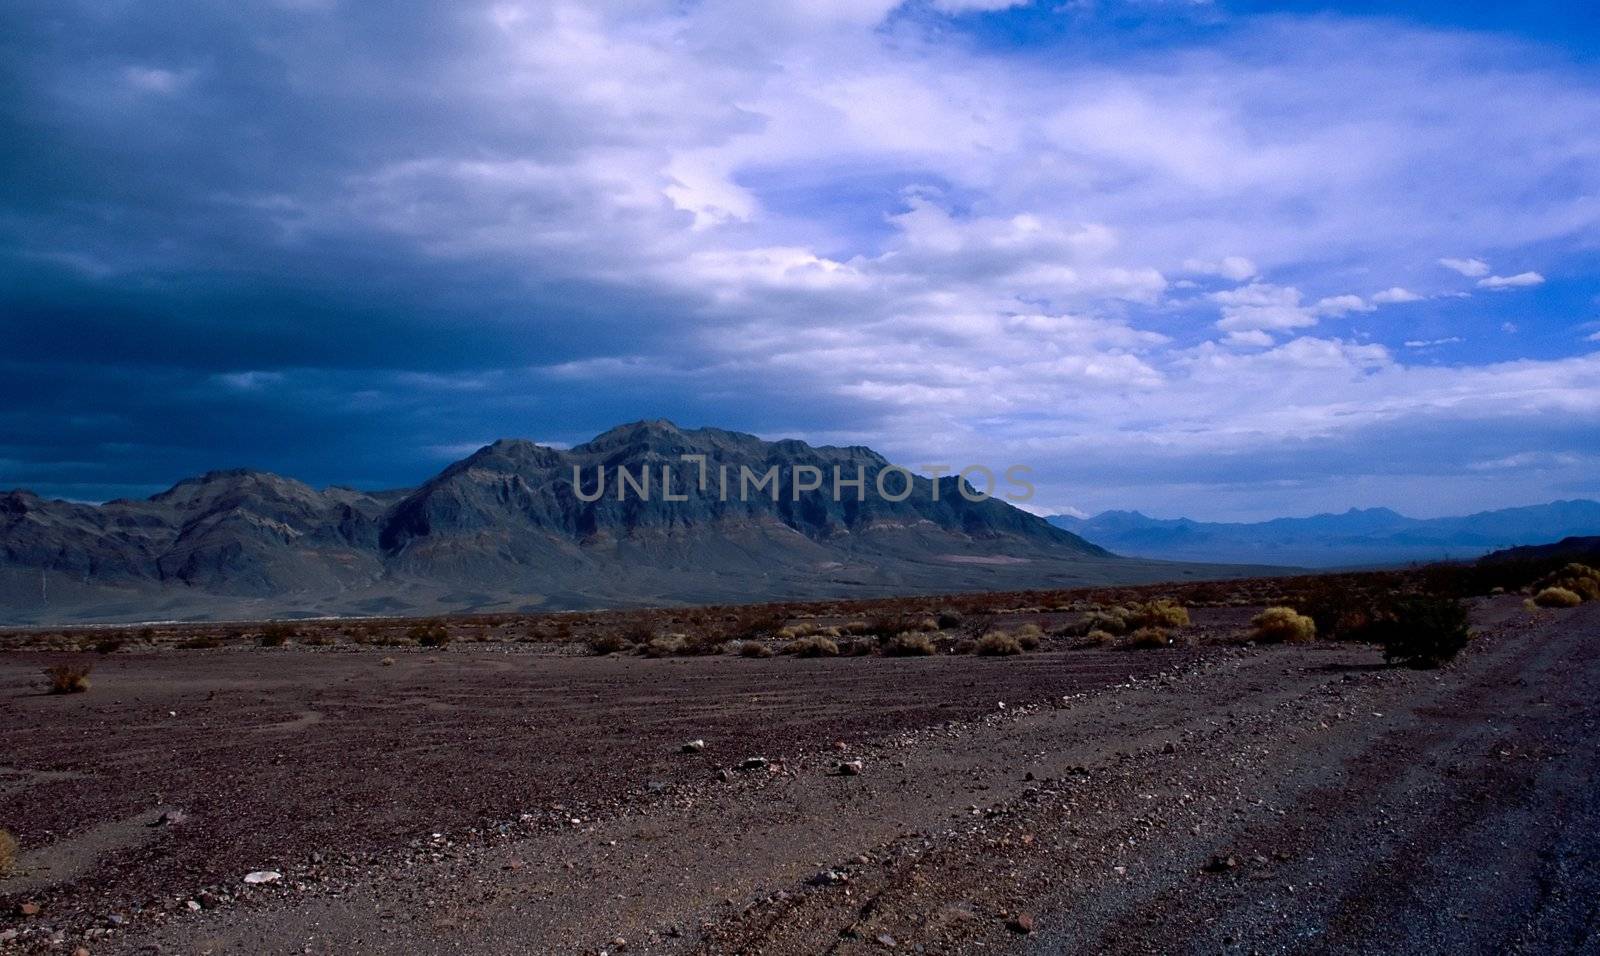 Mojave Desert by melastmohican